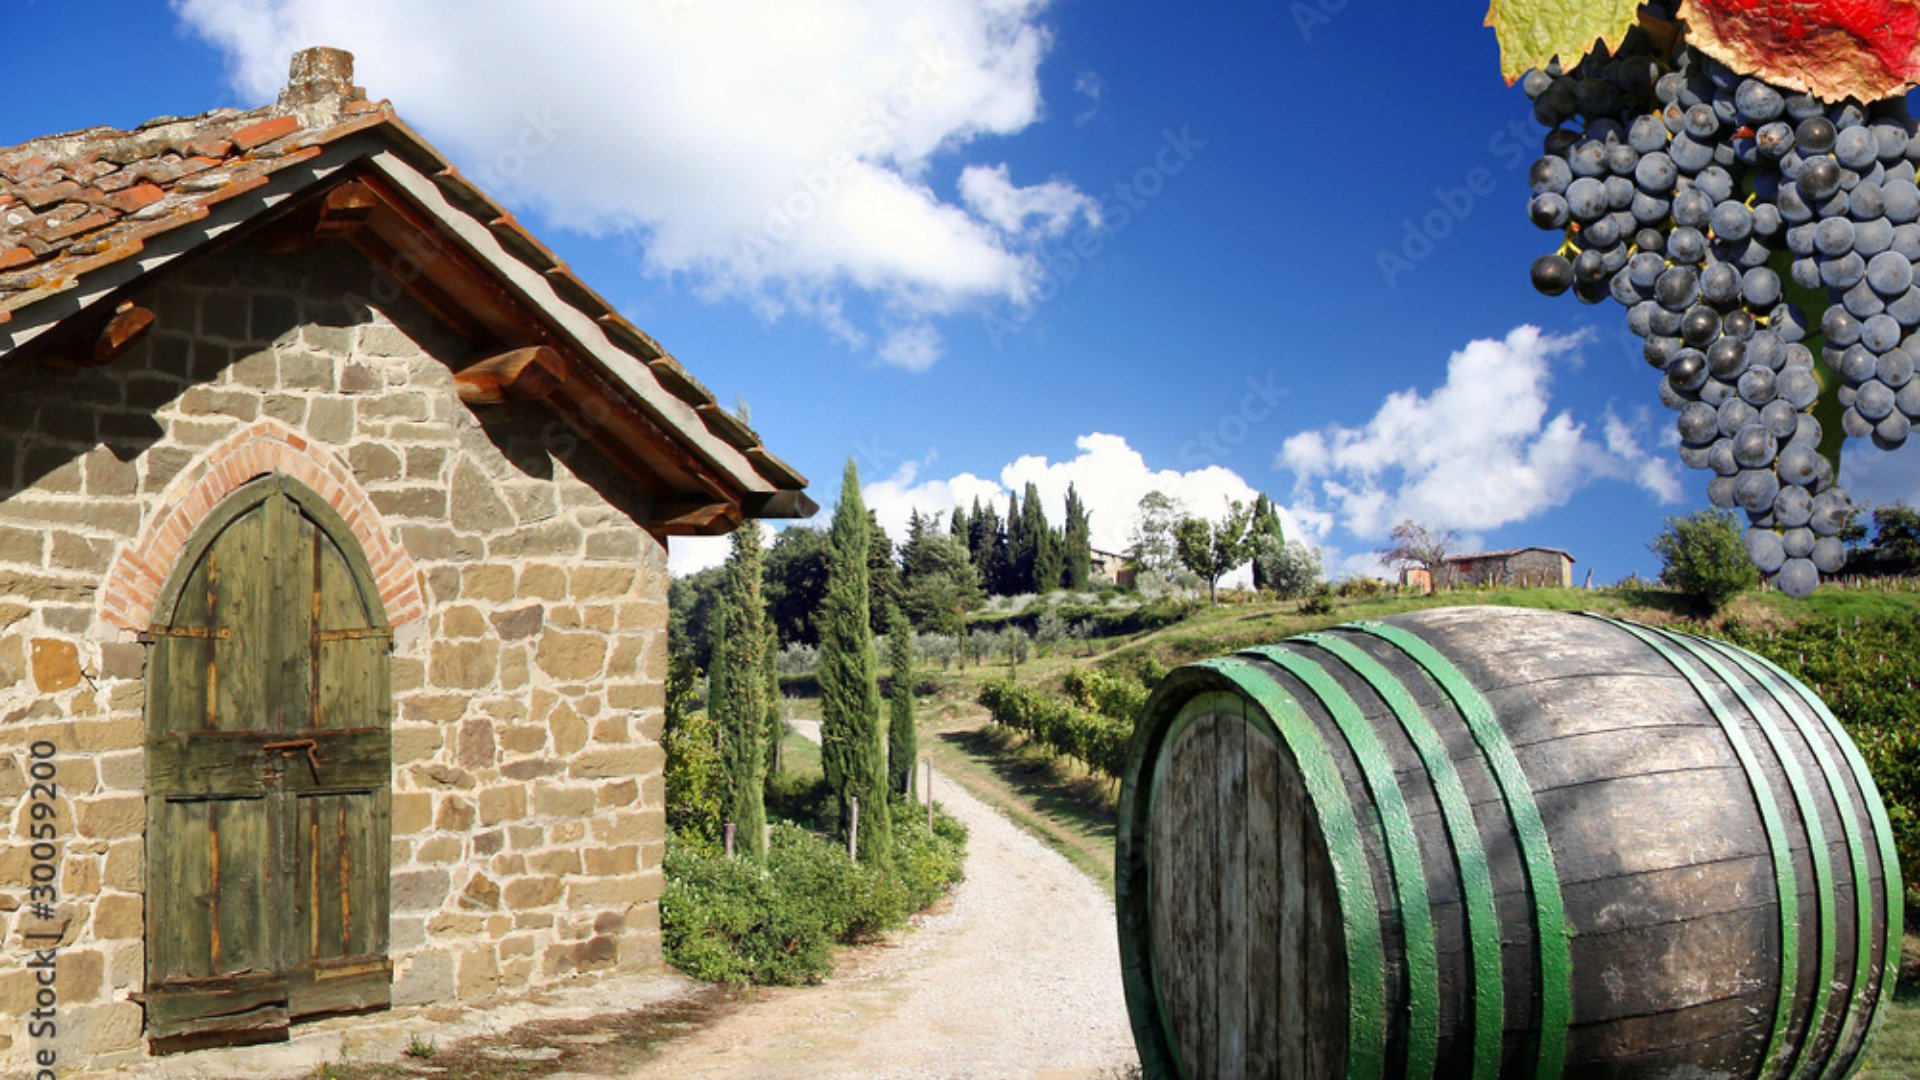 Degustazione Vini Umbria: Un viaggio nelle rinomate cantine umbre